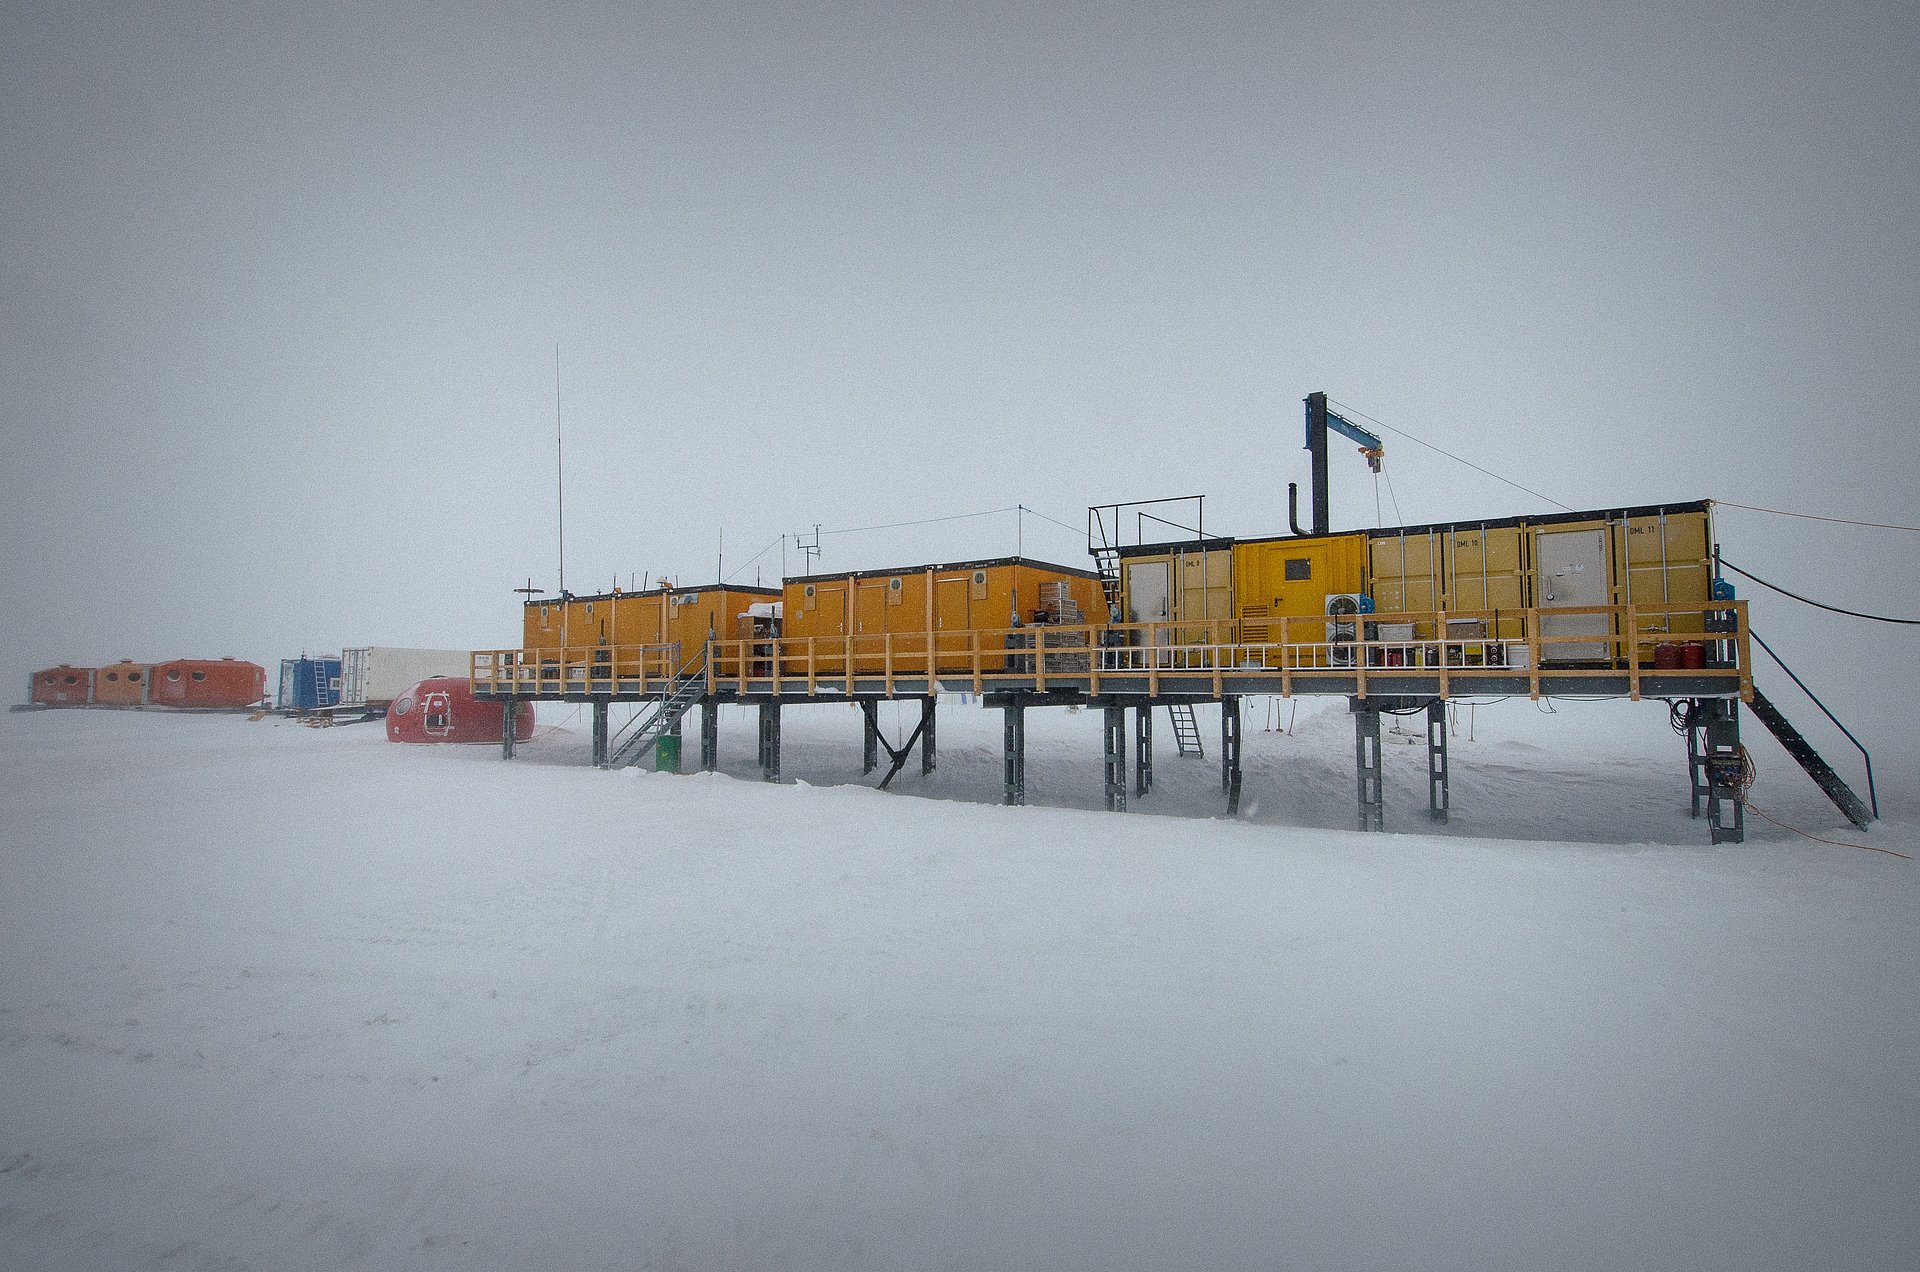 Die Kohnen-Station ist eine Containersiedlung in der Antarktis, aus deren Nähe die Schneeproben stammen, in denen Eisen-60 gefunden wurde.